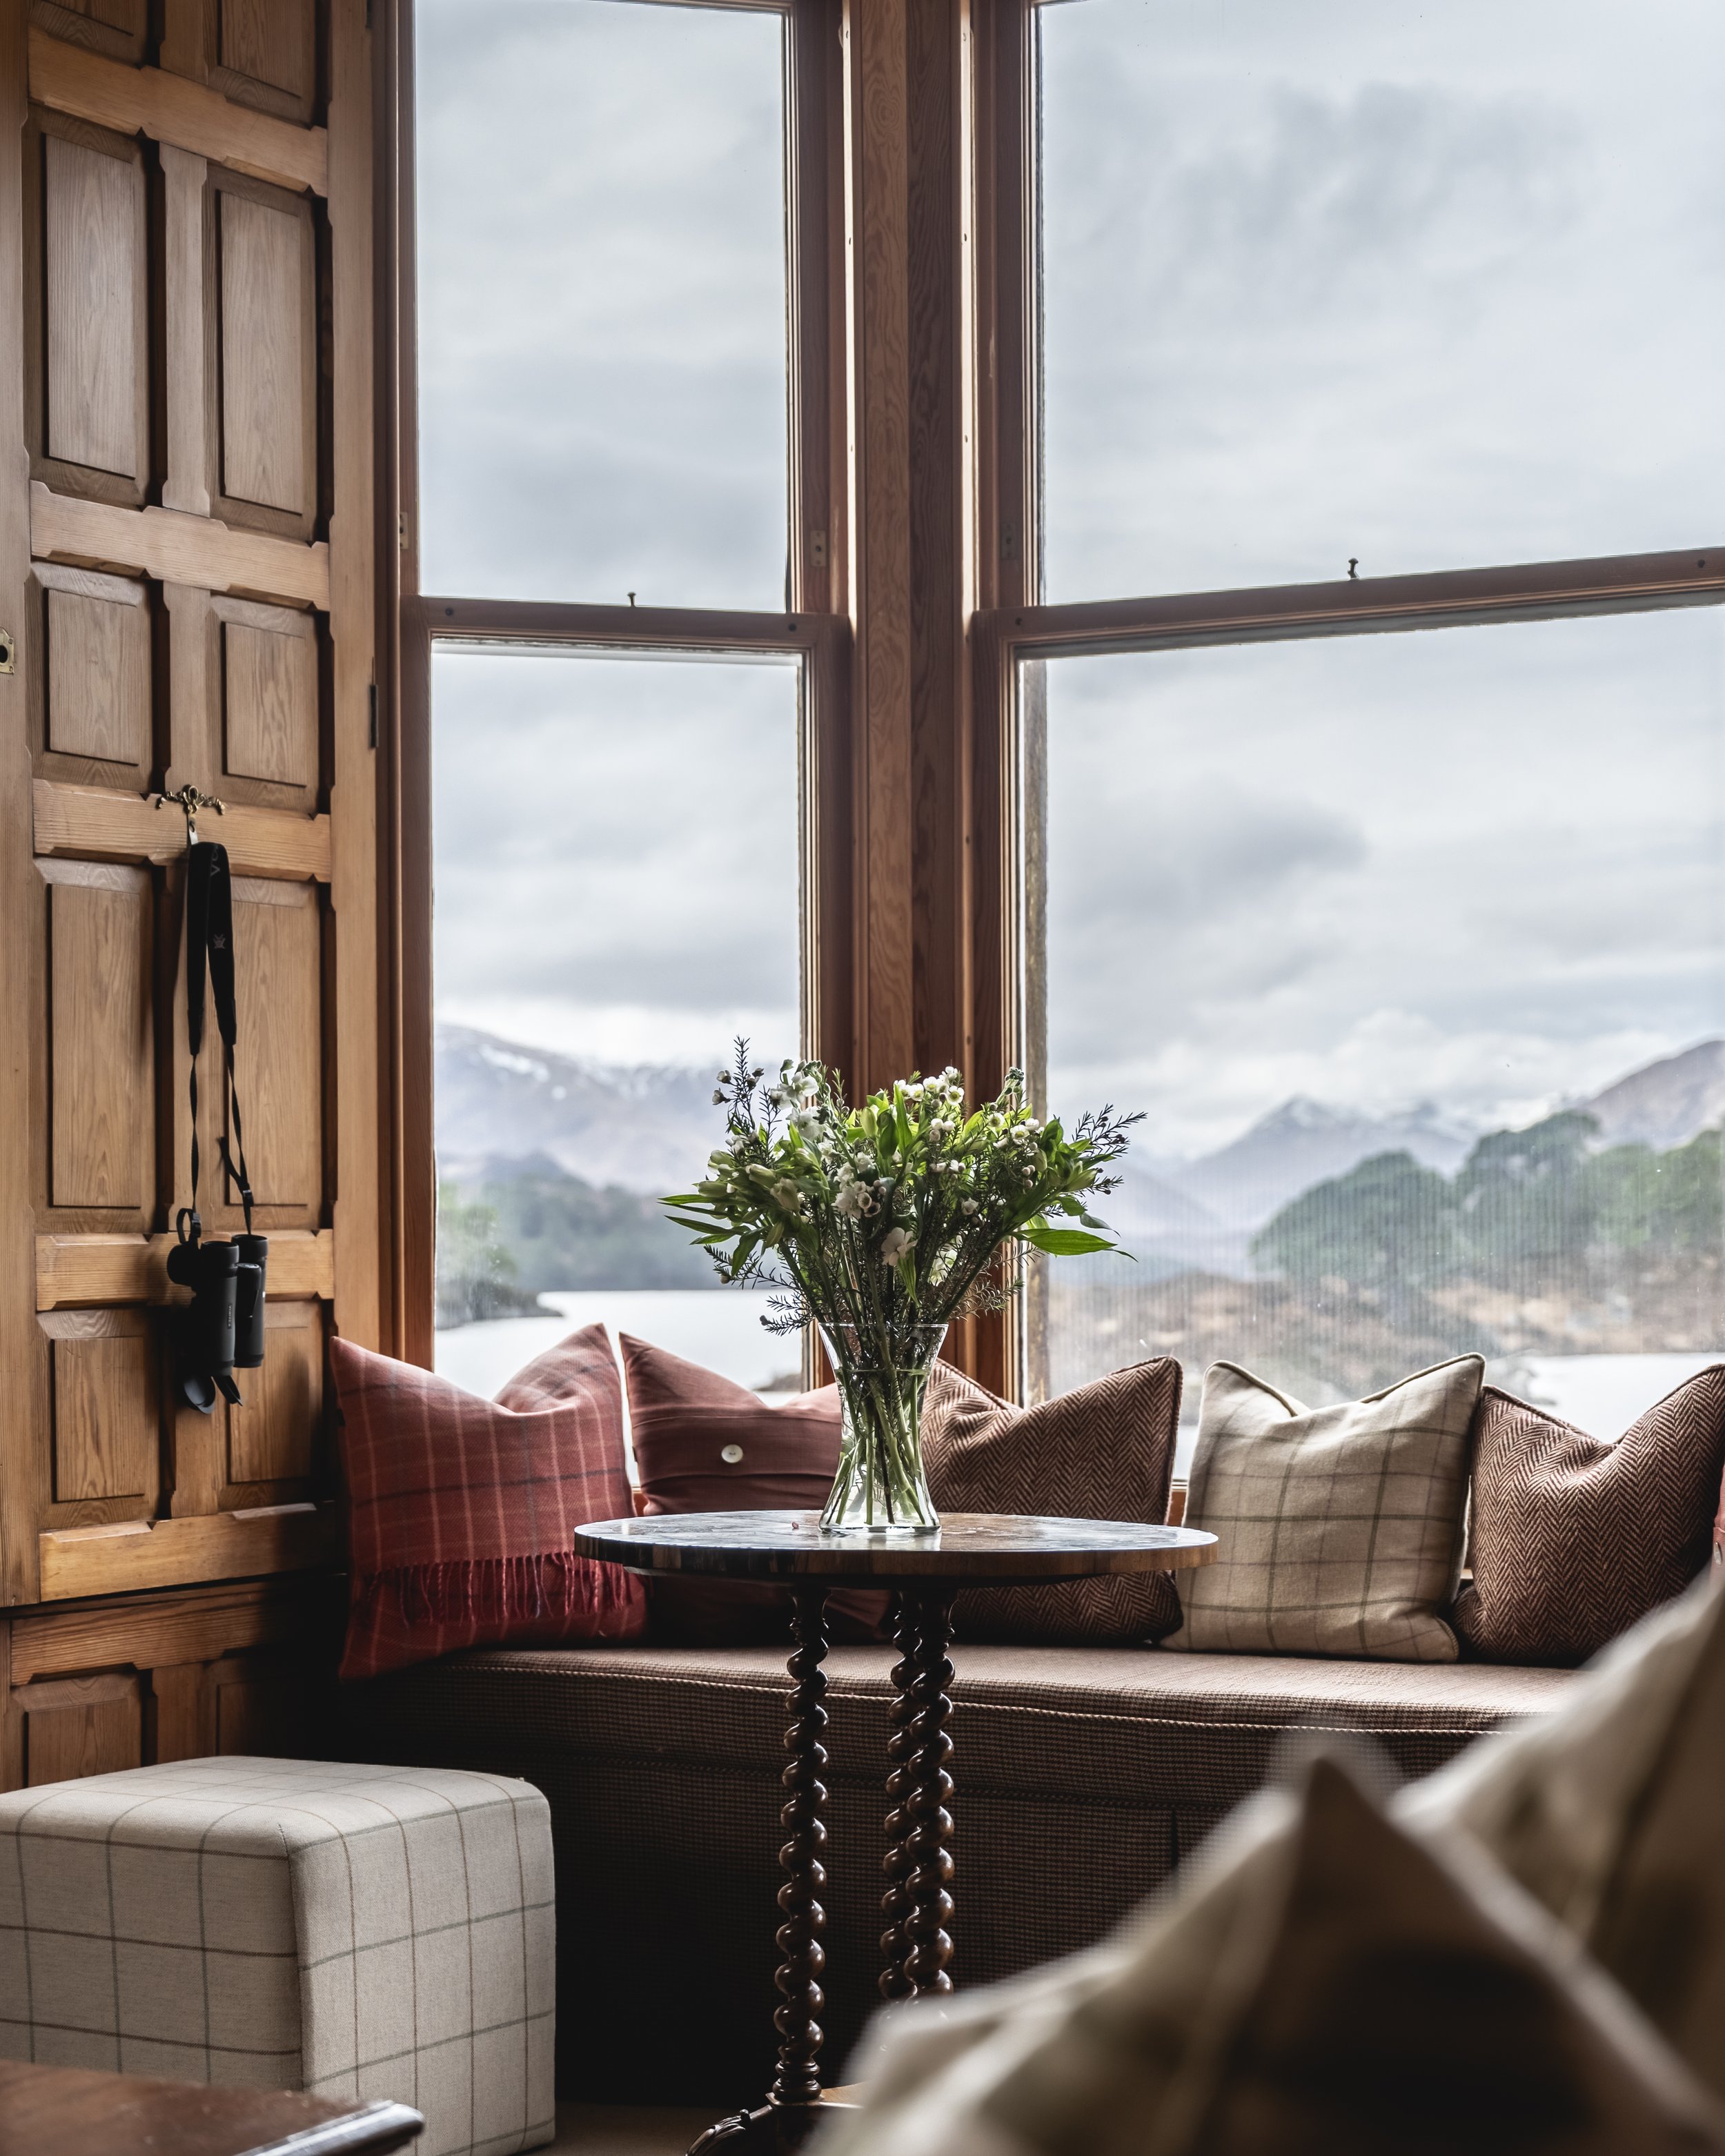 Glen-Affric-Scotland-Highlands-Luxury-Sitting-Room-View.jpg